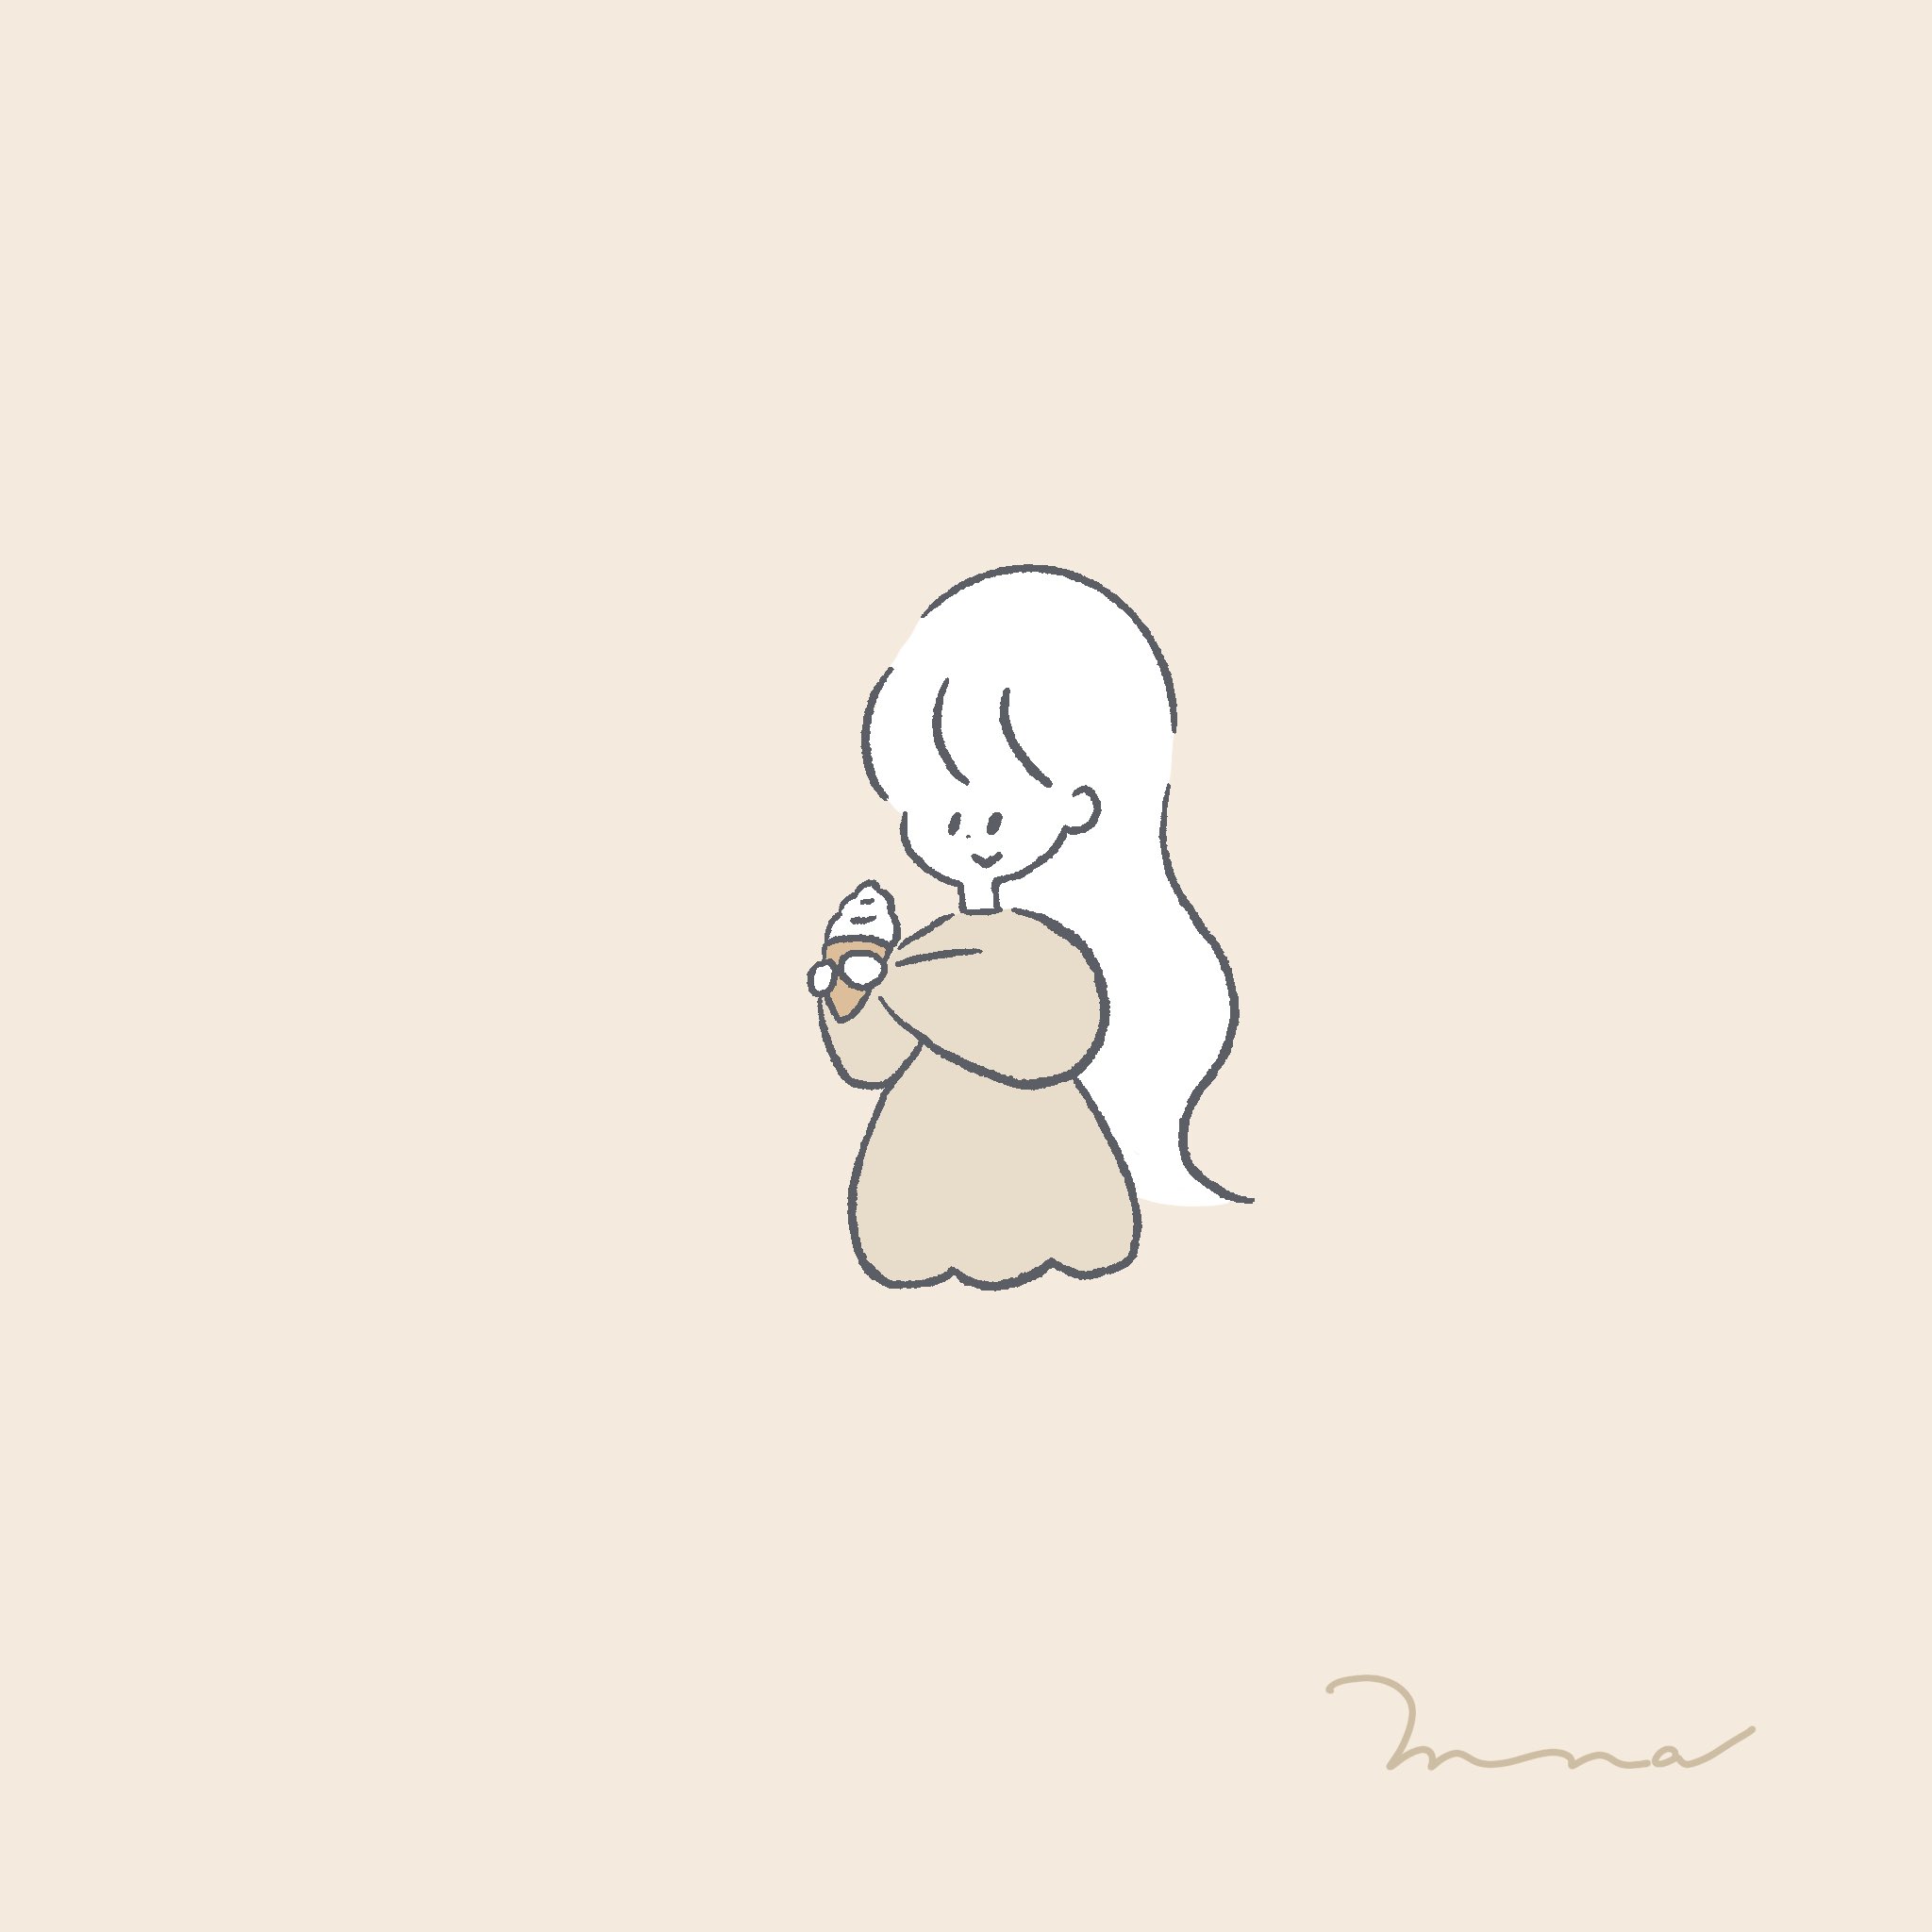 Miina ミイナ イラスト 在 Twitter 上 ソフトクリーム アイスクリーム アイス 女の子 ストーリー 壁紙 シンプルイラスト ゆるいイラスト イラスト 線画 絵描きさんと繋がりたい イラスト好きな人と繋がりたい 保育 保育イラスト 韓国